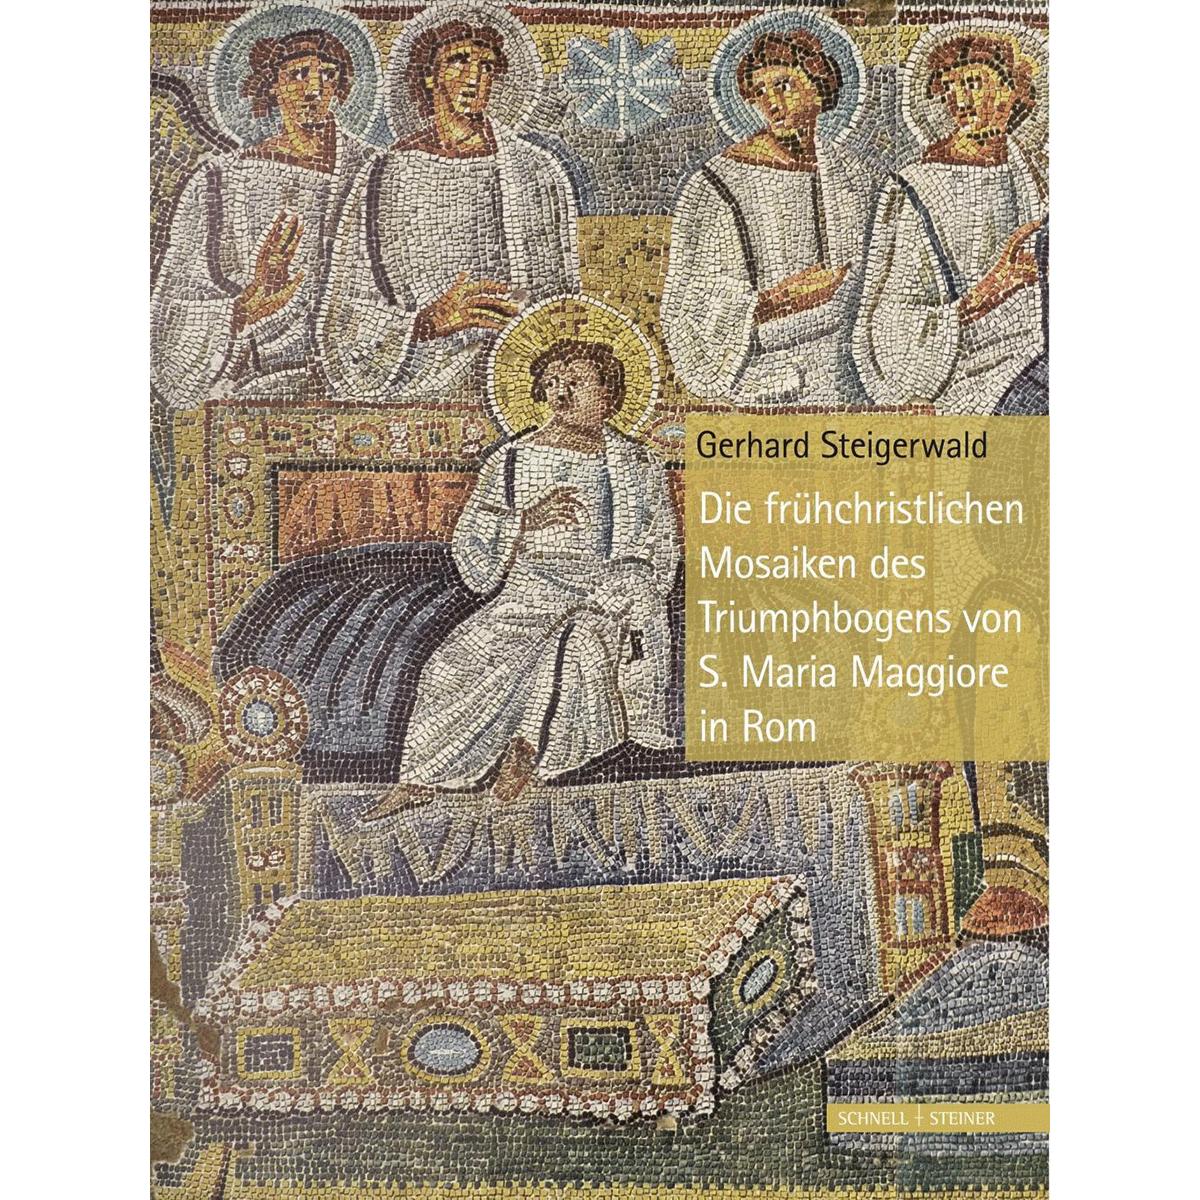 Die frühchristlichen Mosaiken des Triumphbogens von S. Maria Maggiore in Rom - Gerhard Steigerwald